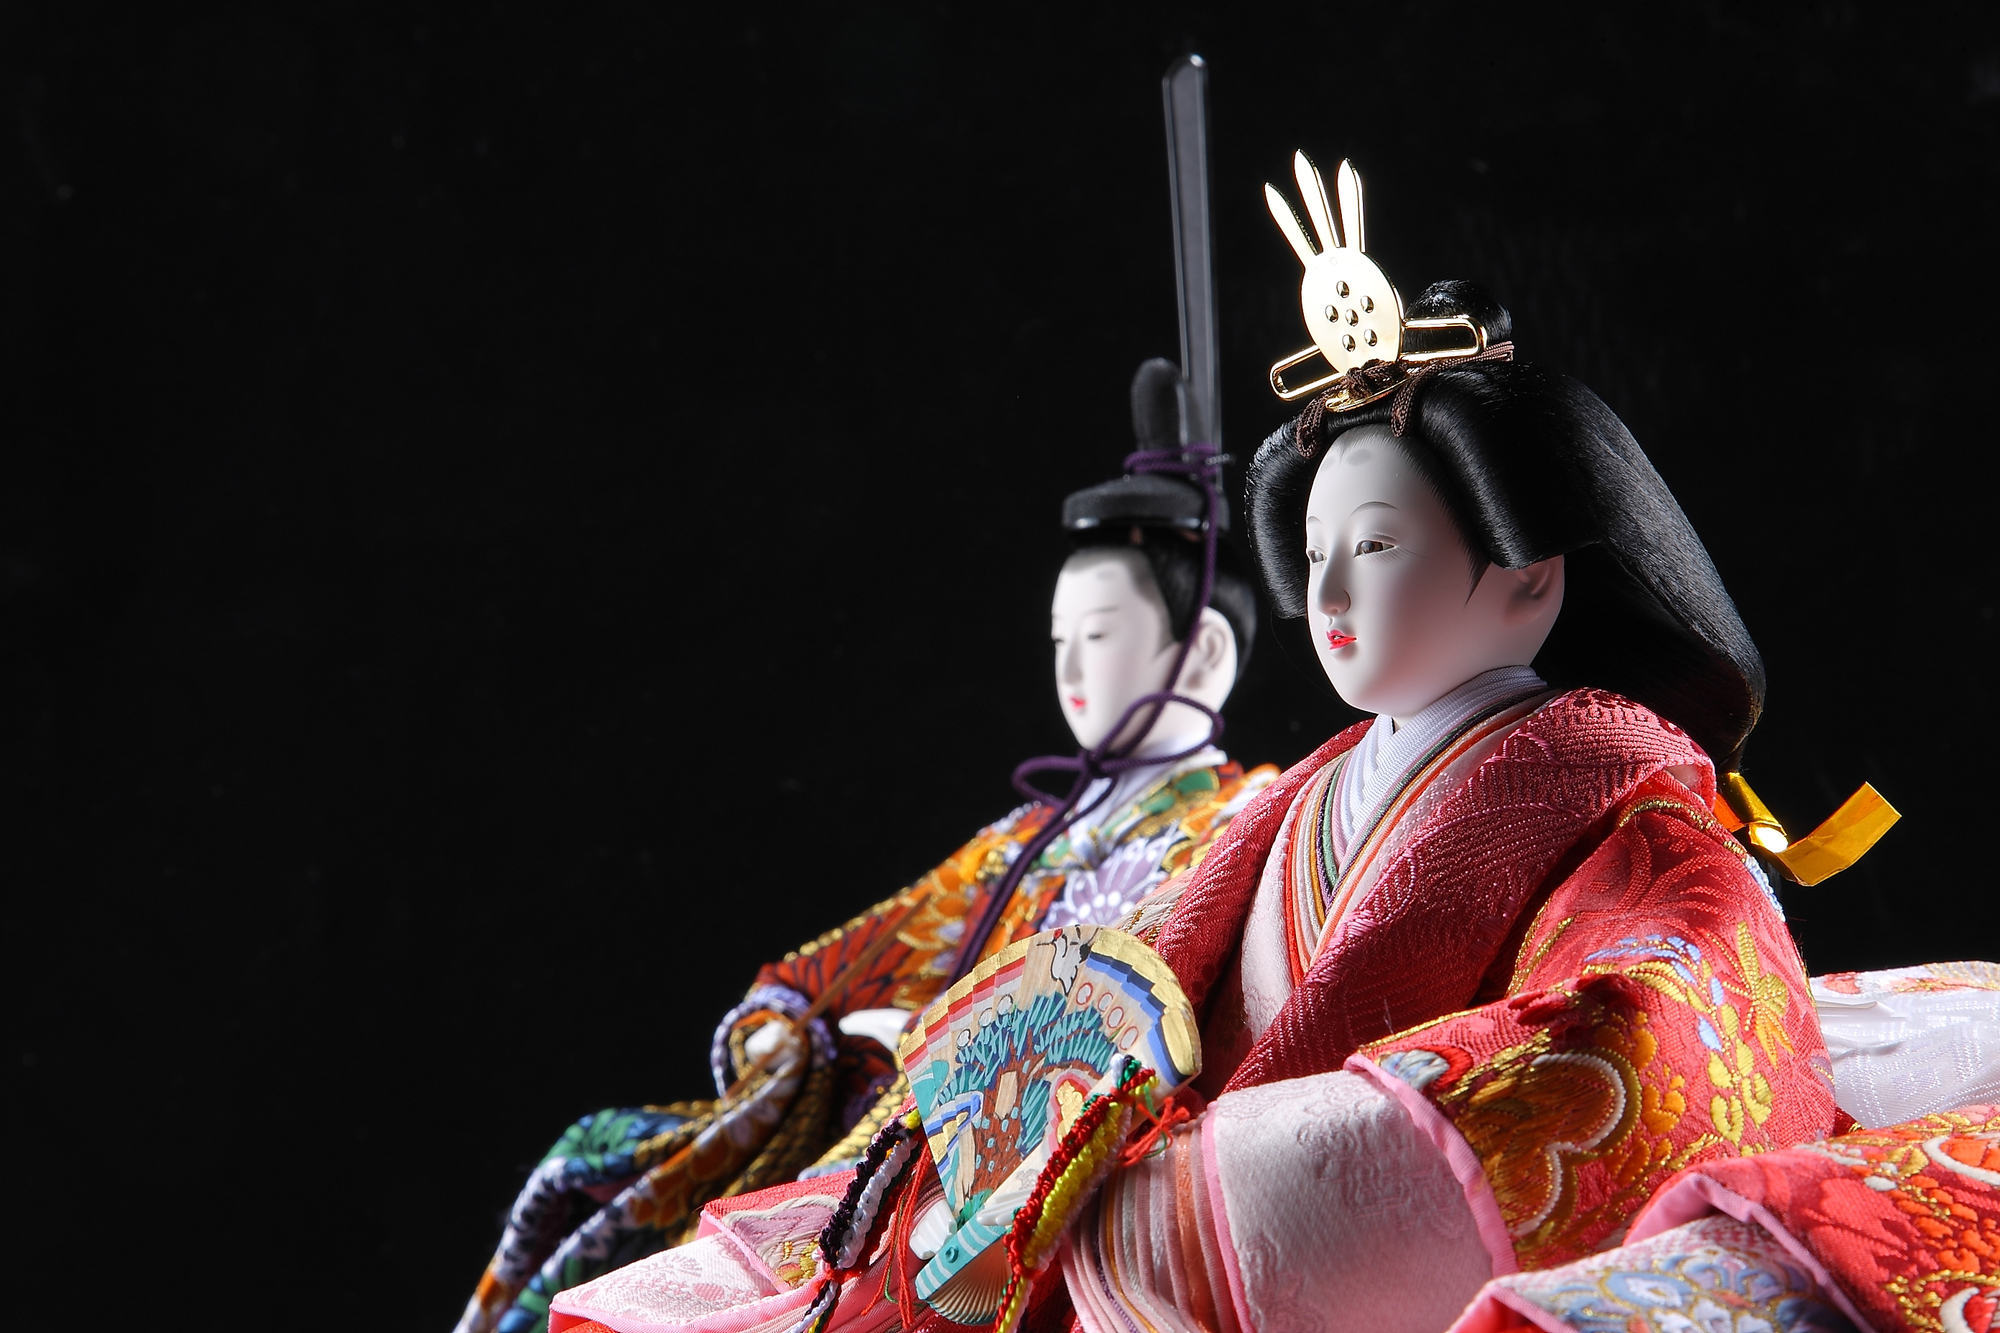 日本のひな祭りにはどんな風習がある ひな人形や桃の節句の由来とあわせて解説 にほんご日和